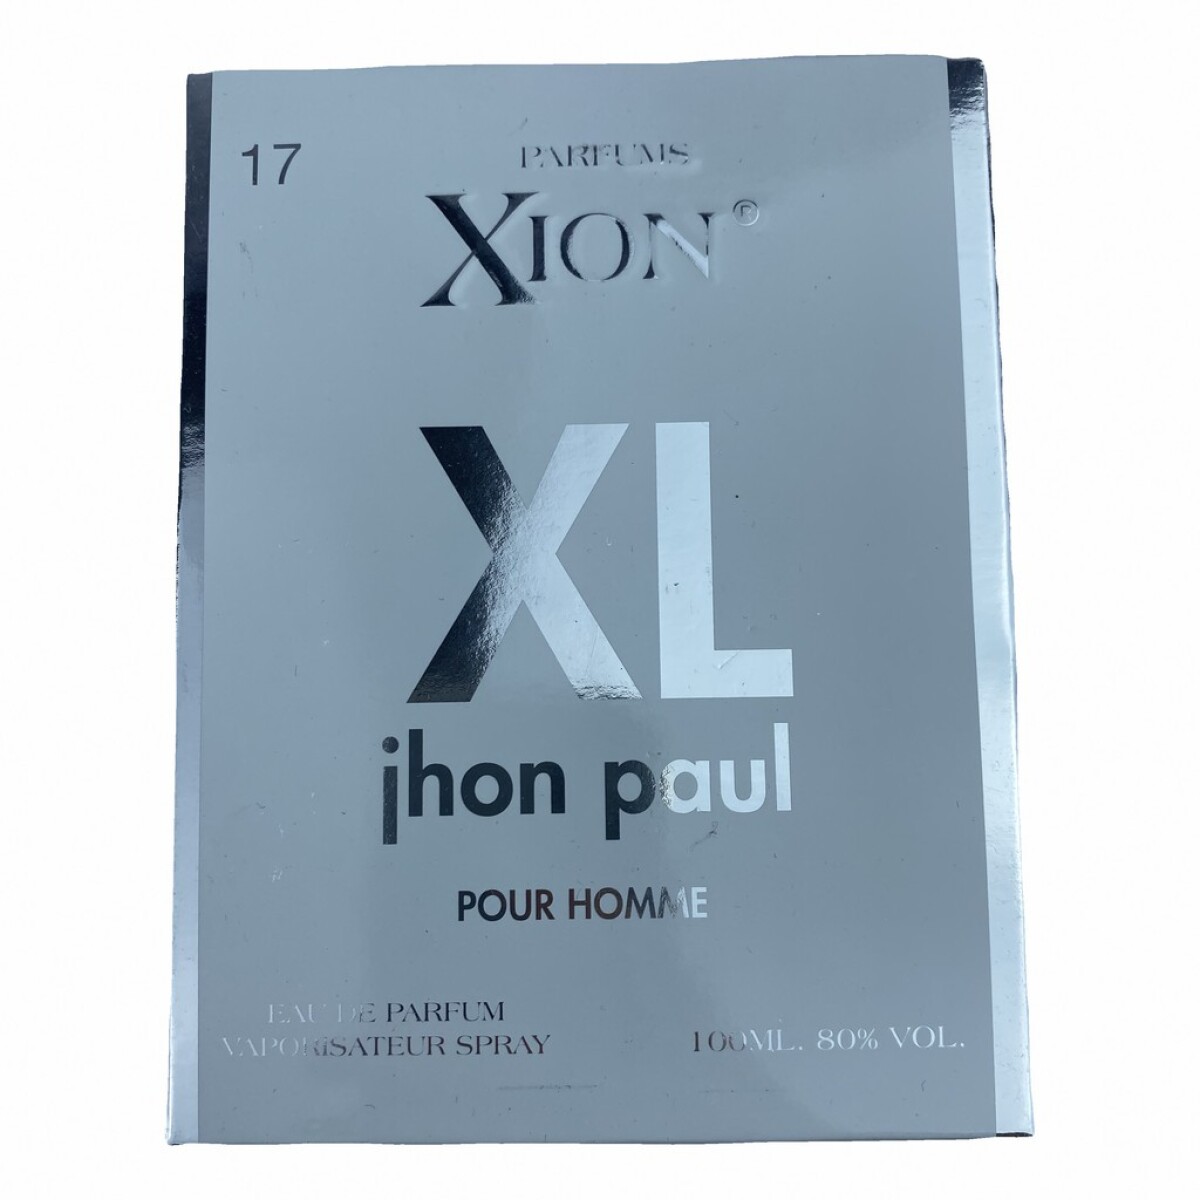 Xion XL JHON PAUL (17) 